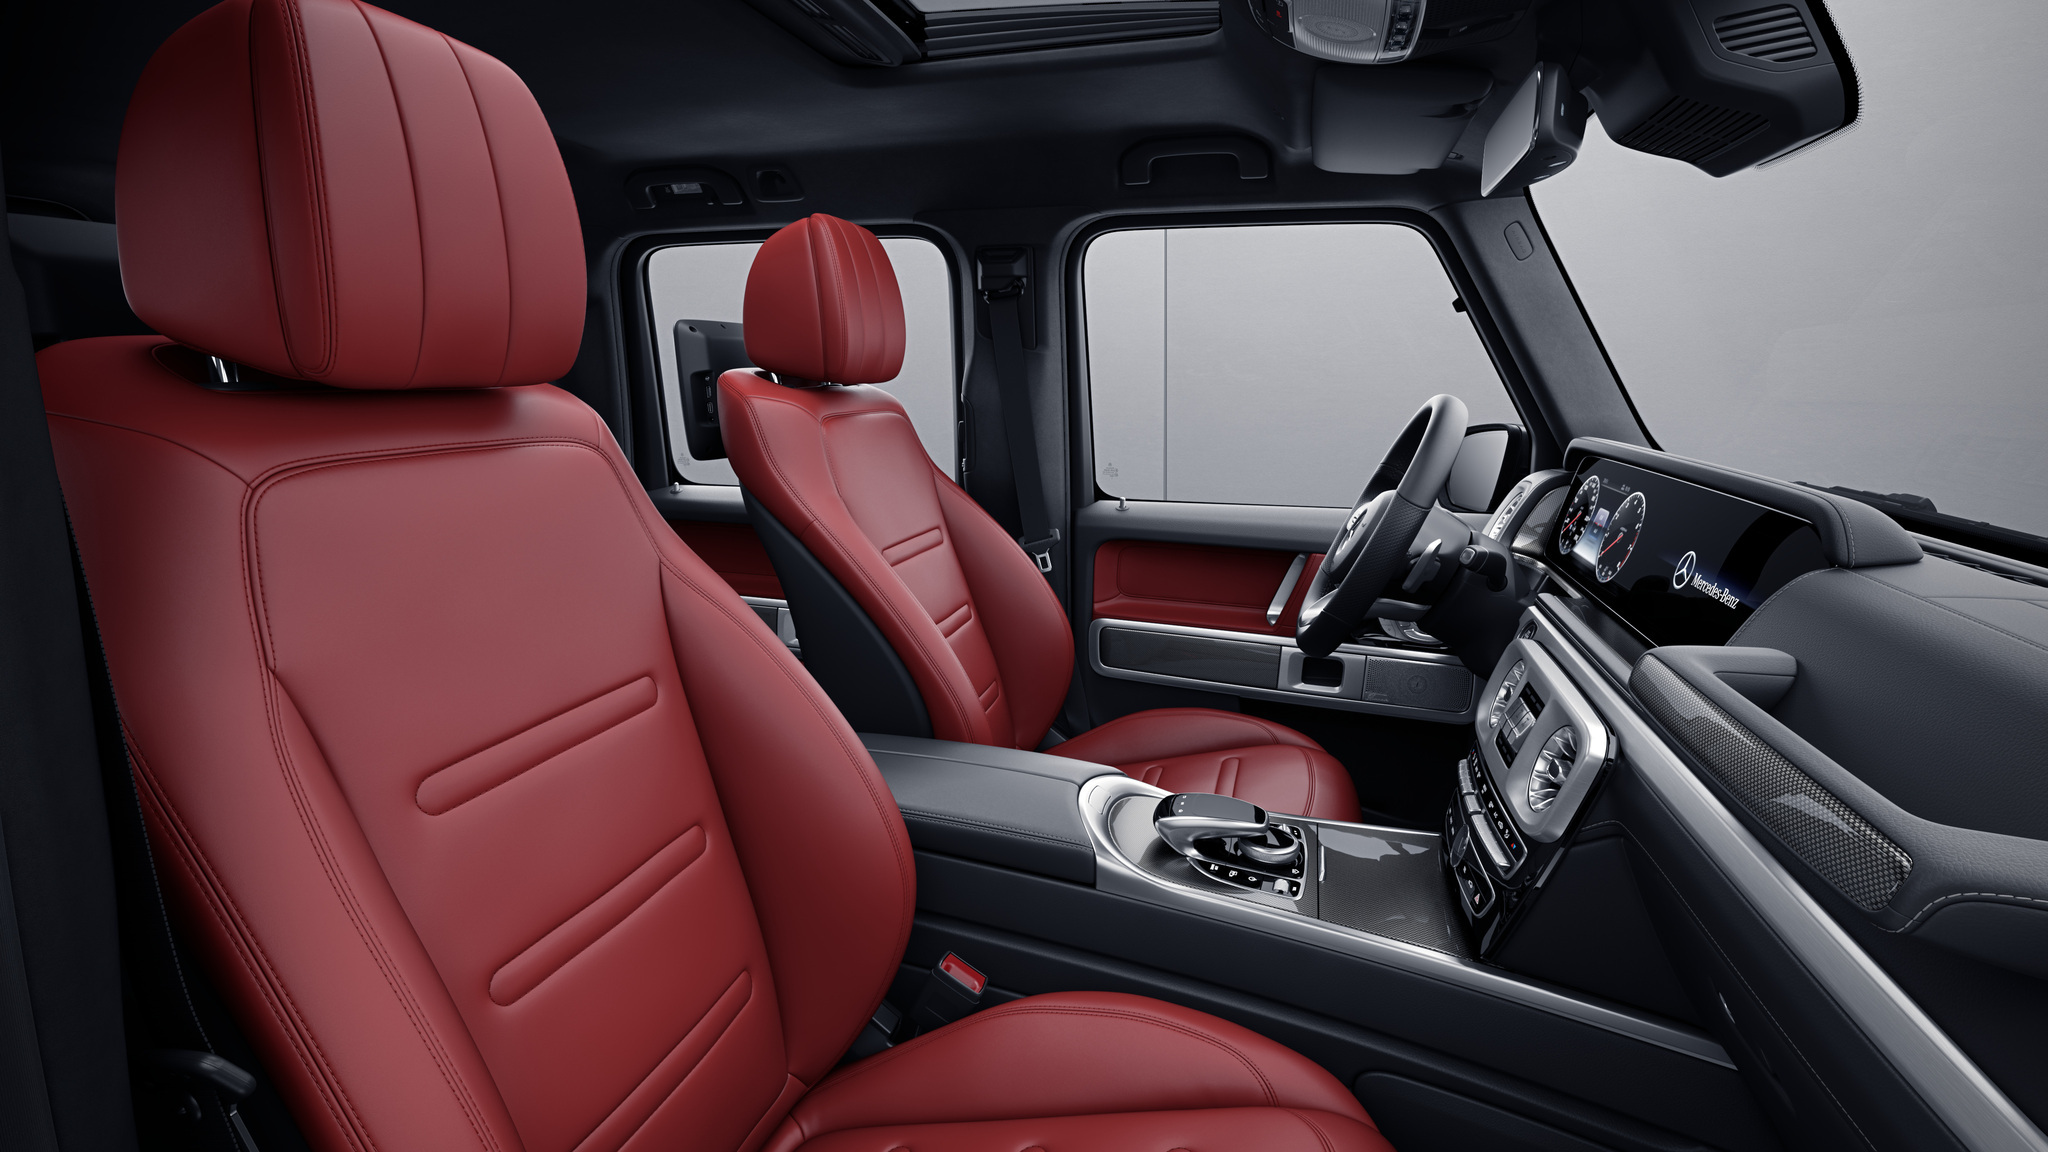 Habitacle de la Mercedes Classe G avec une Sellerie cuir nappa bicolore - rouge classique noir